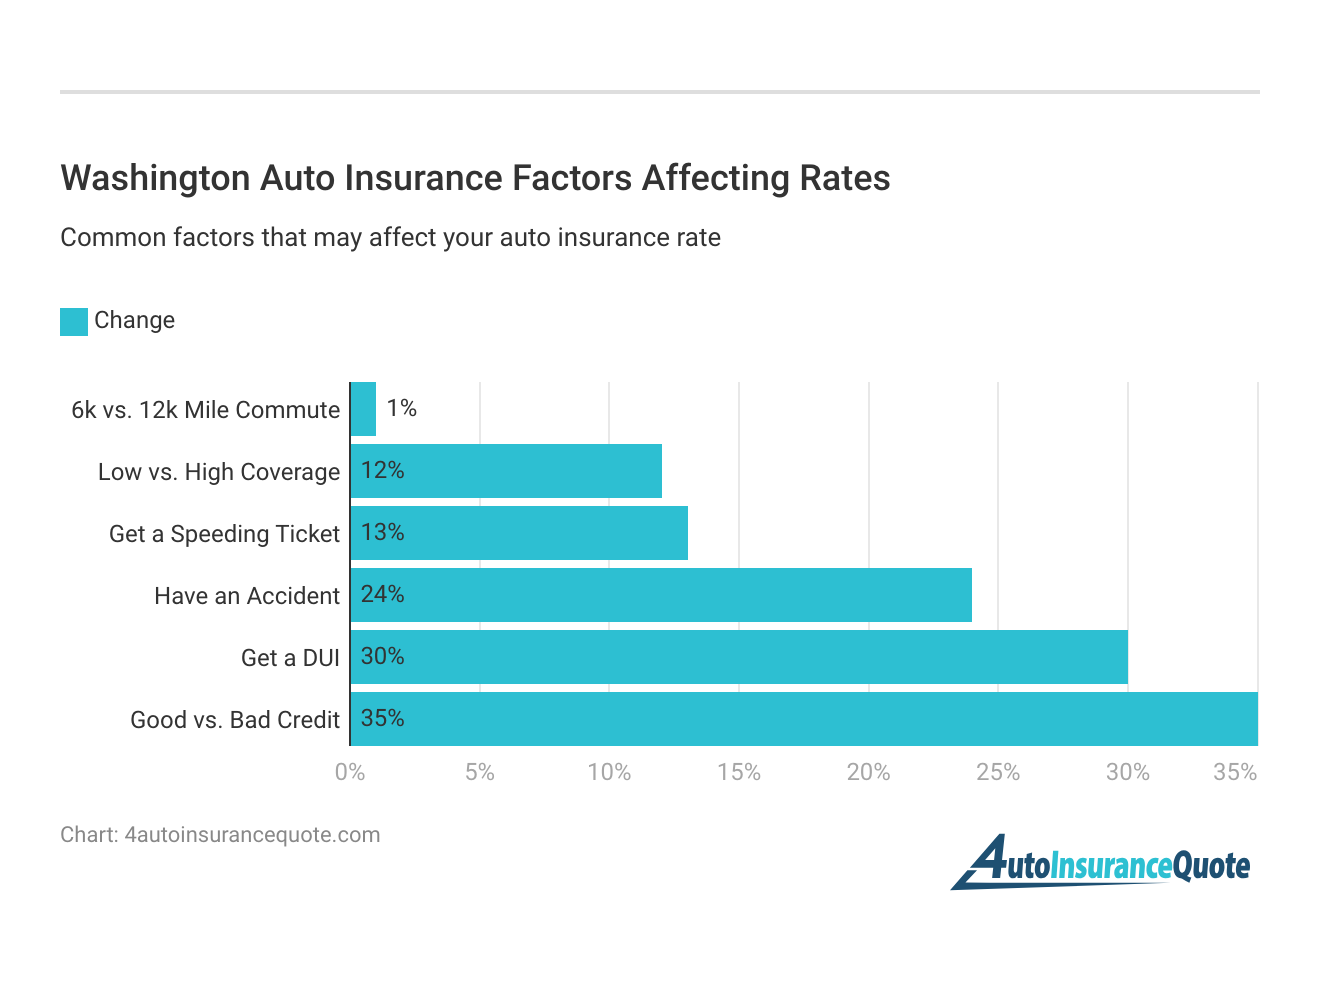 <h3>Washington Auto Insurance Factors Affecting Rates</h3>